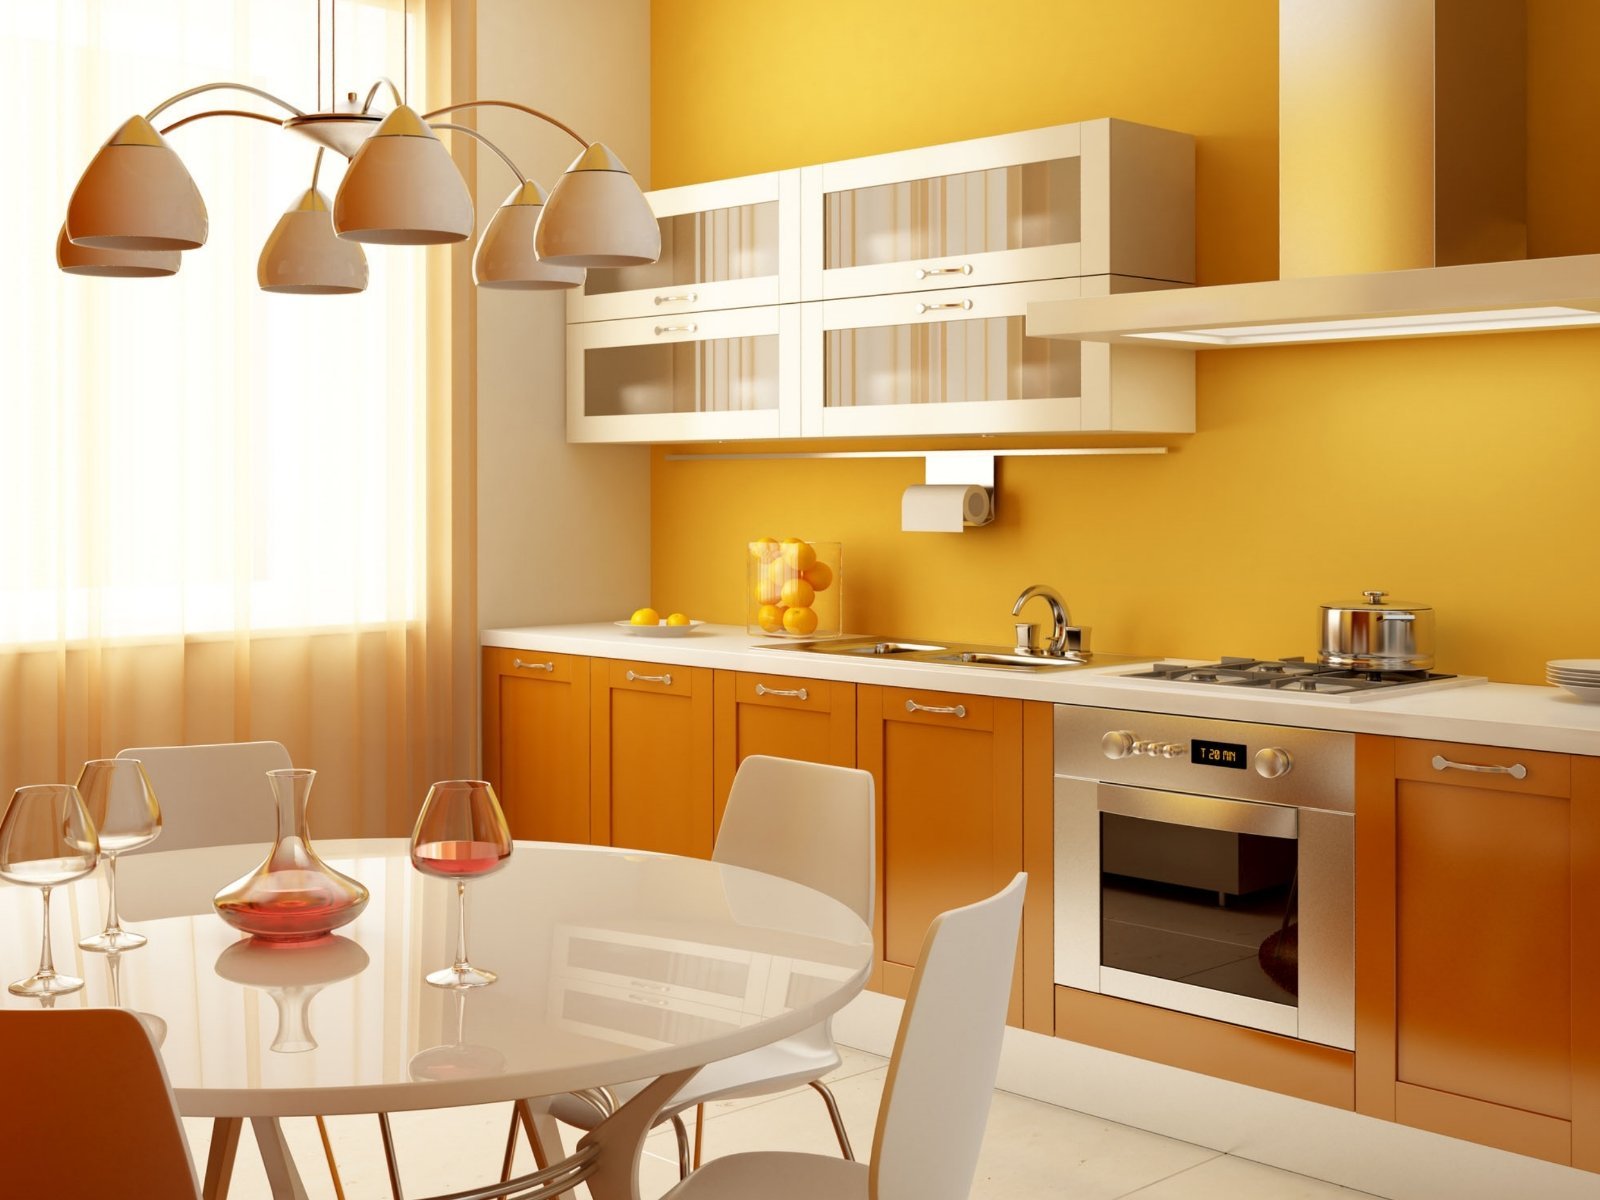 Хорошая простая кухня. Интерьер кухни. Кухни цветовые решения. Кухня в тонах. Кухни цвета.